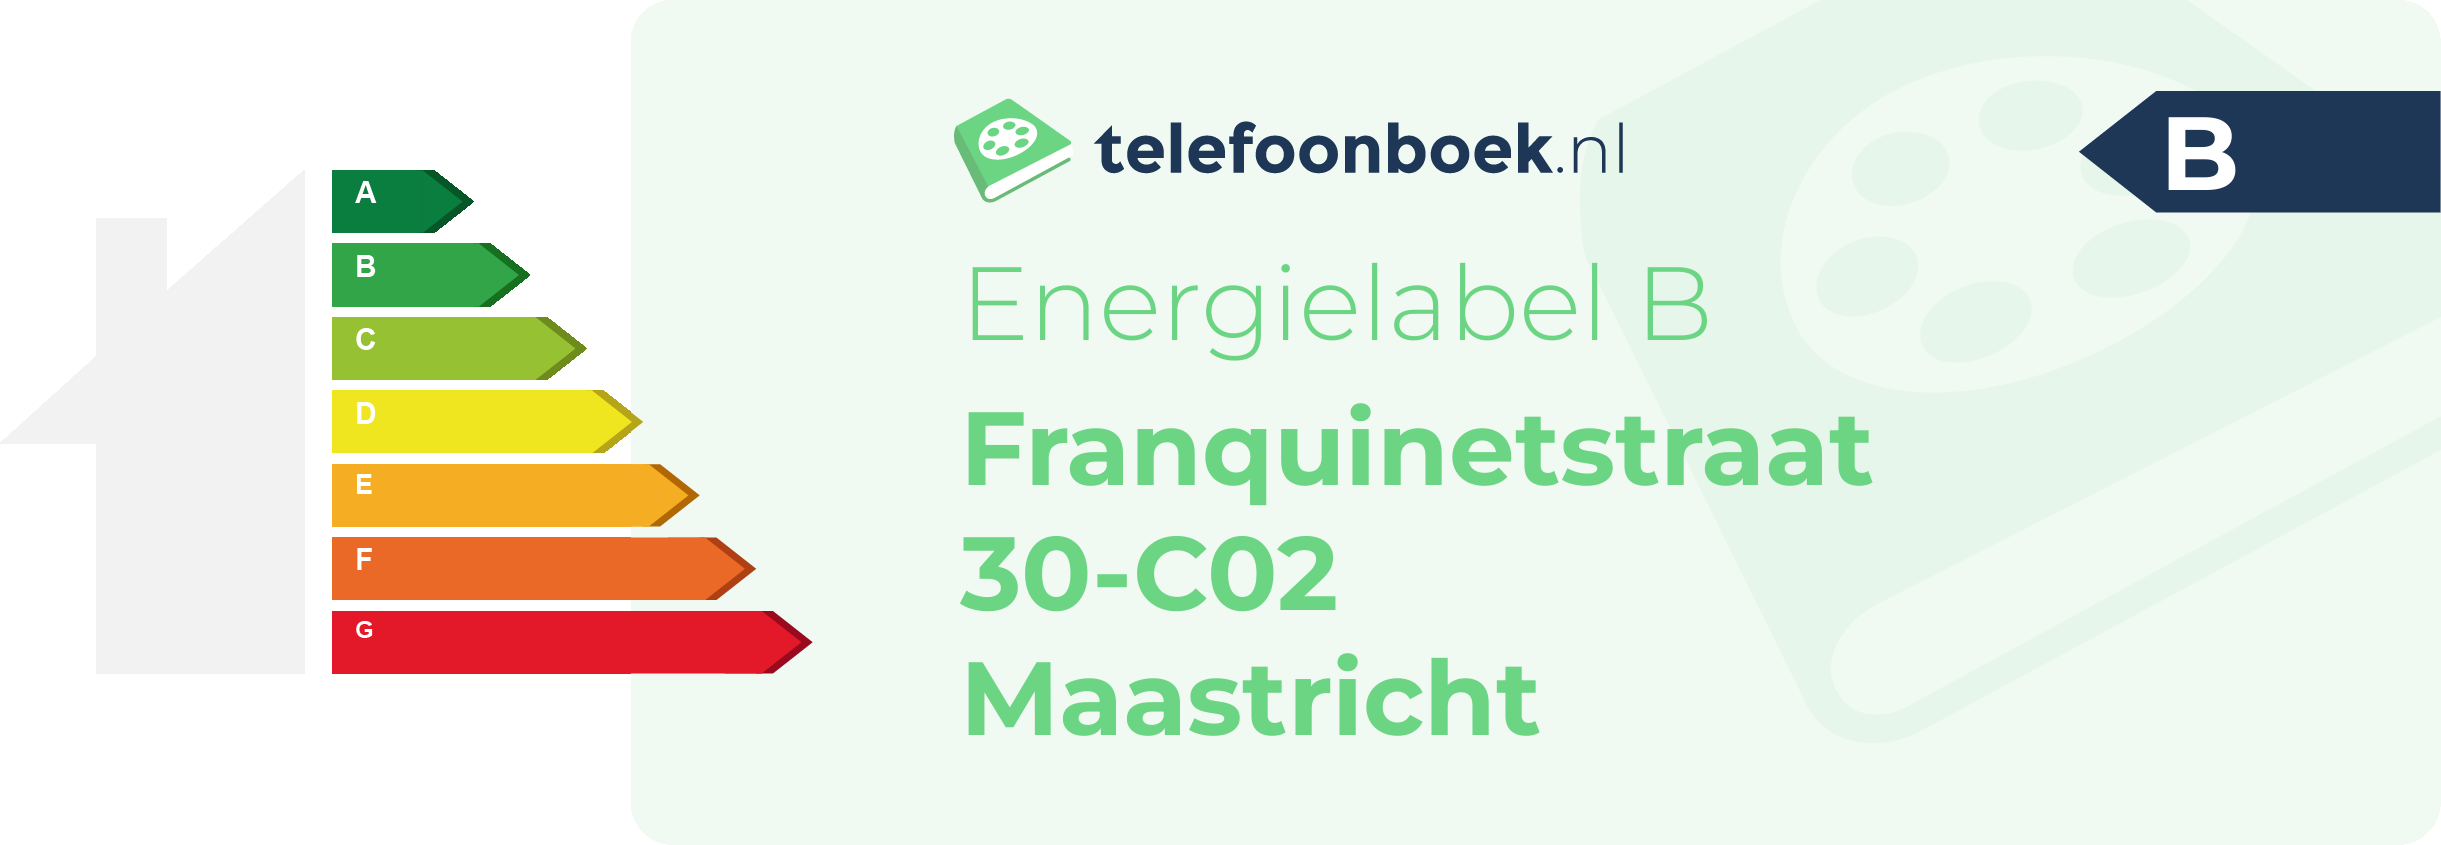 Energielabel Franquinetstraat 30-C02 Maastricht